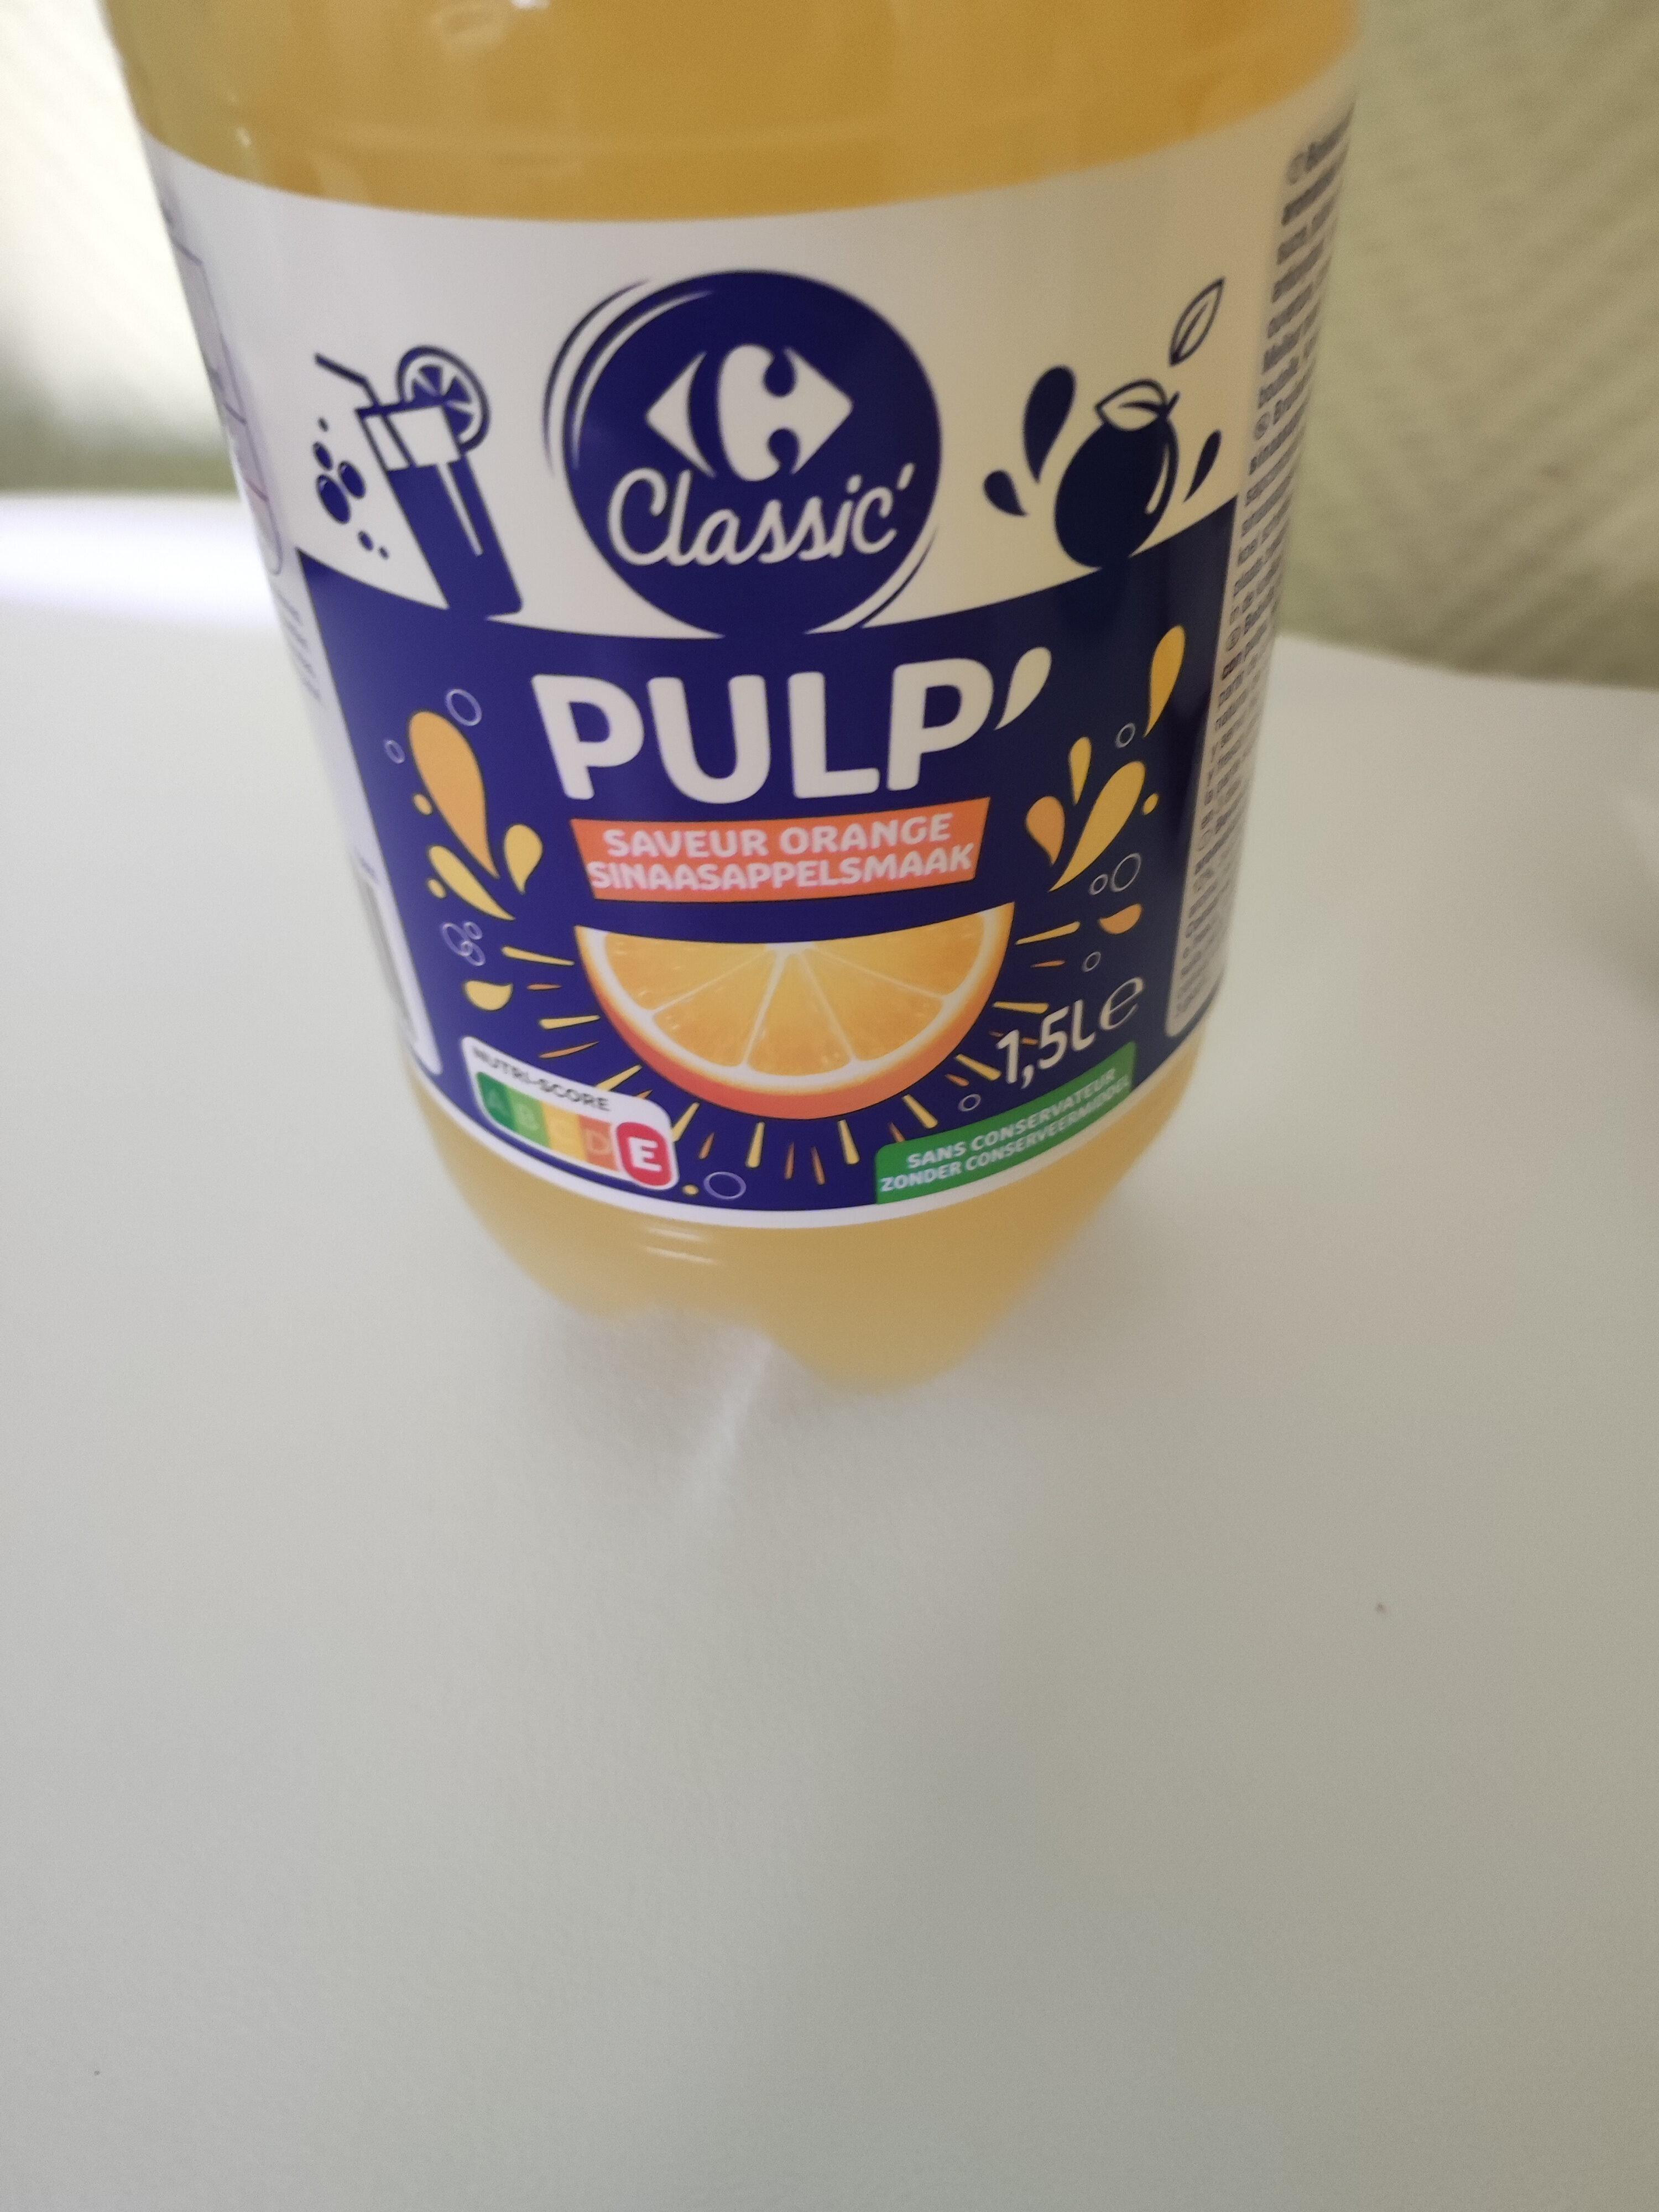 PULP' Saveur Orange - Producte - fr